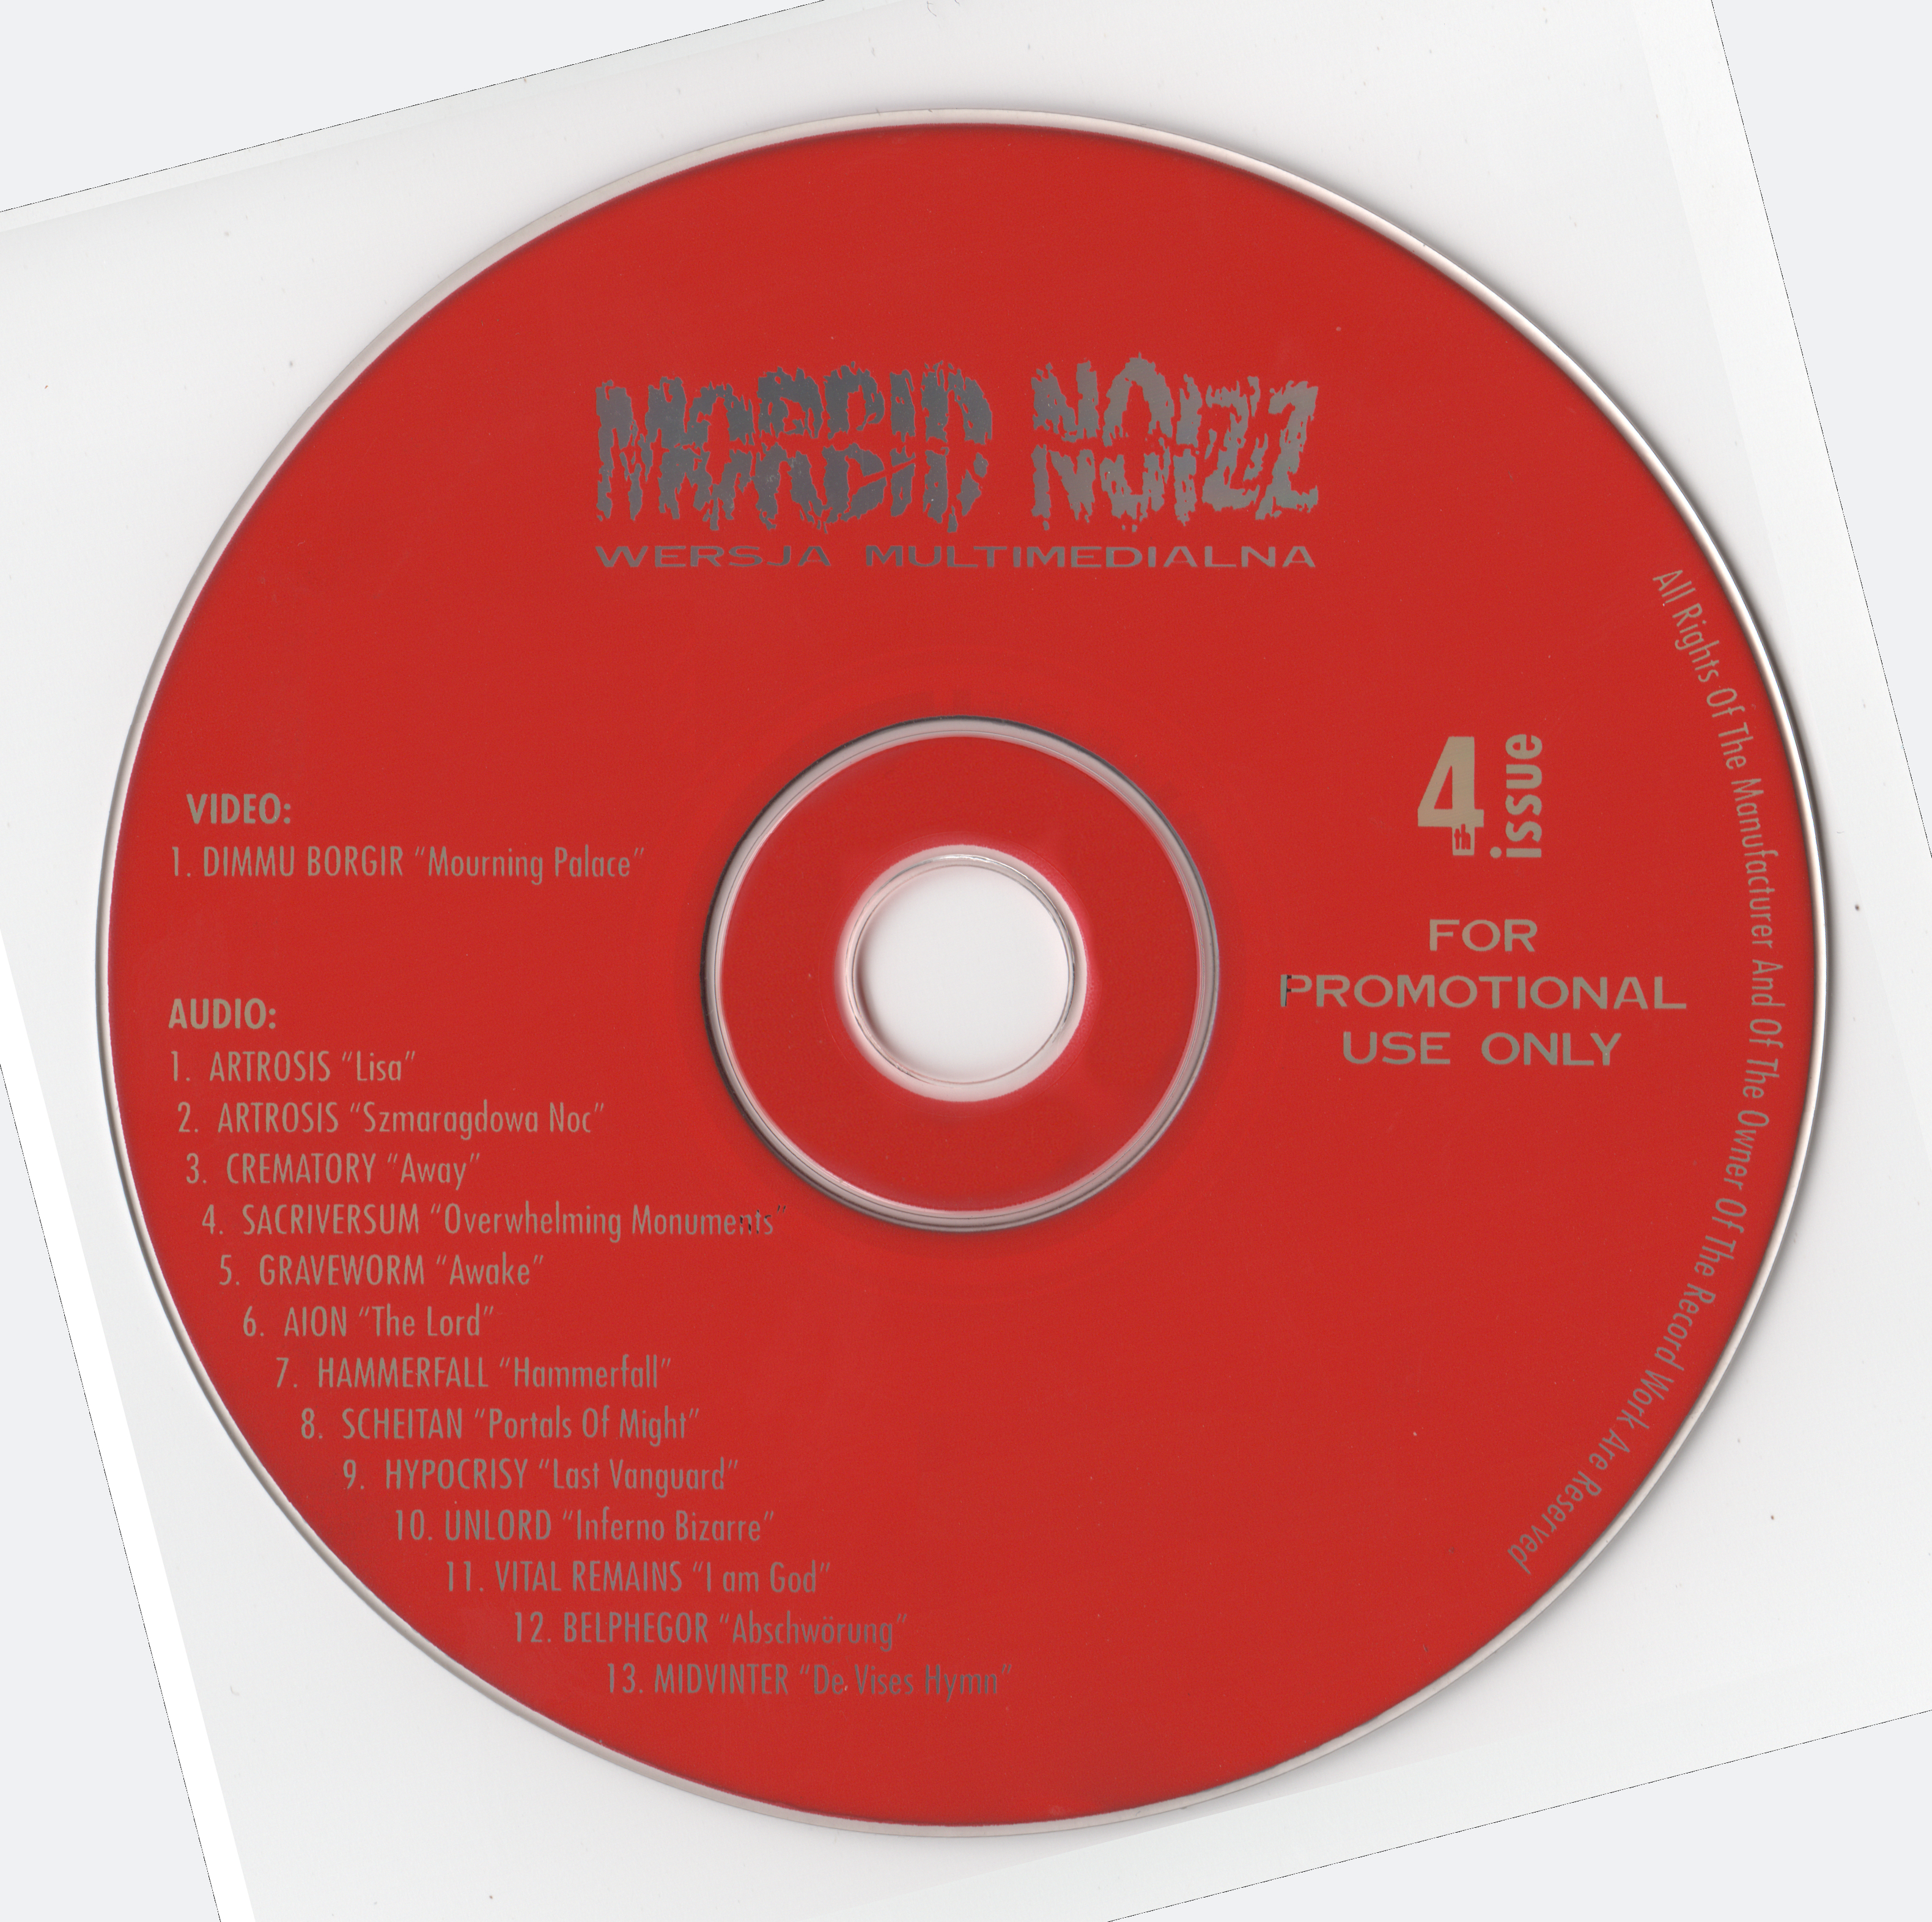 Skład – Norbid Noizz 4 Issue